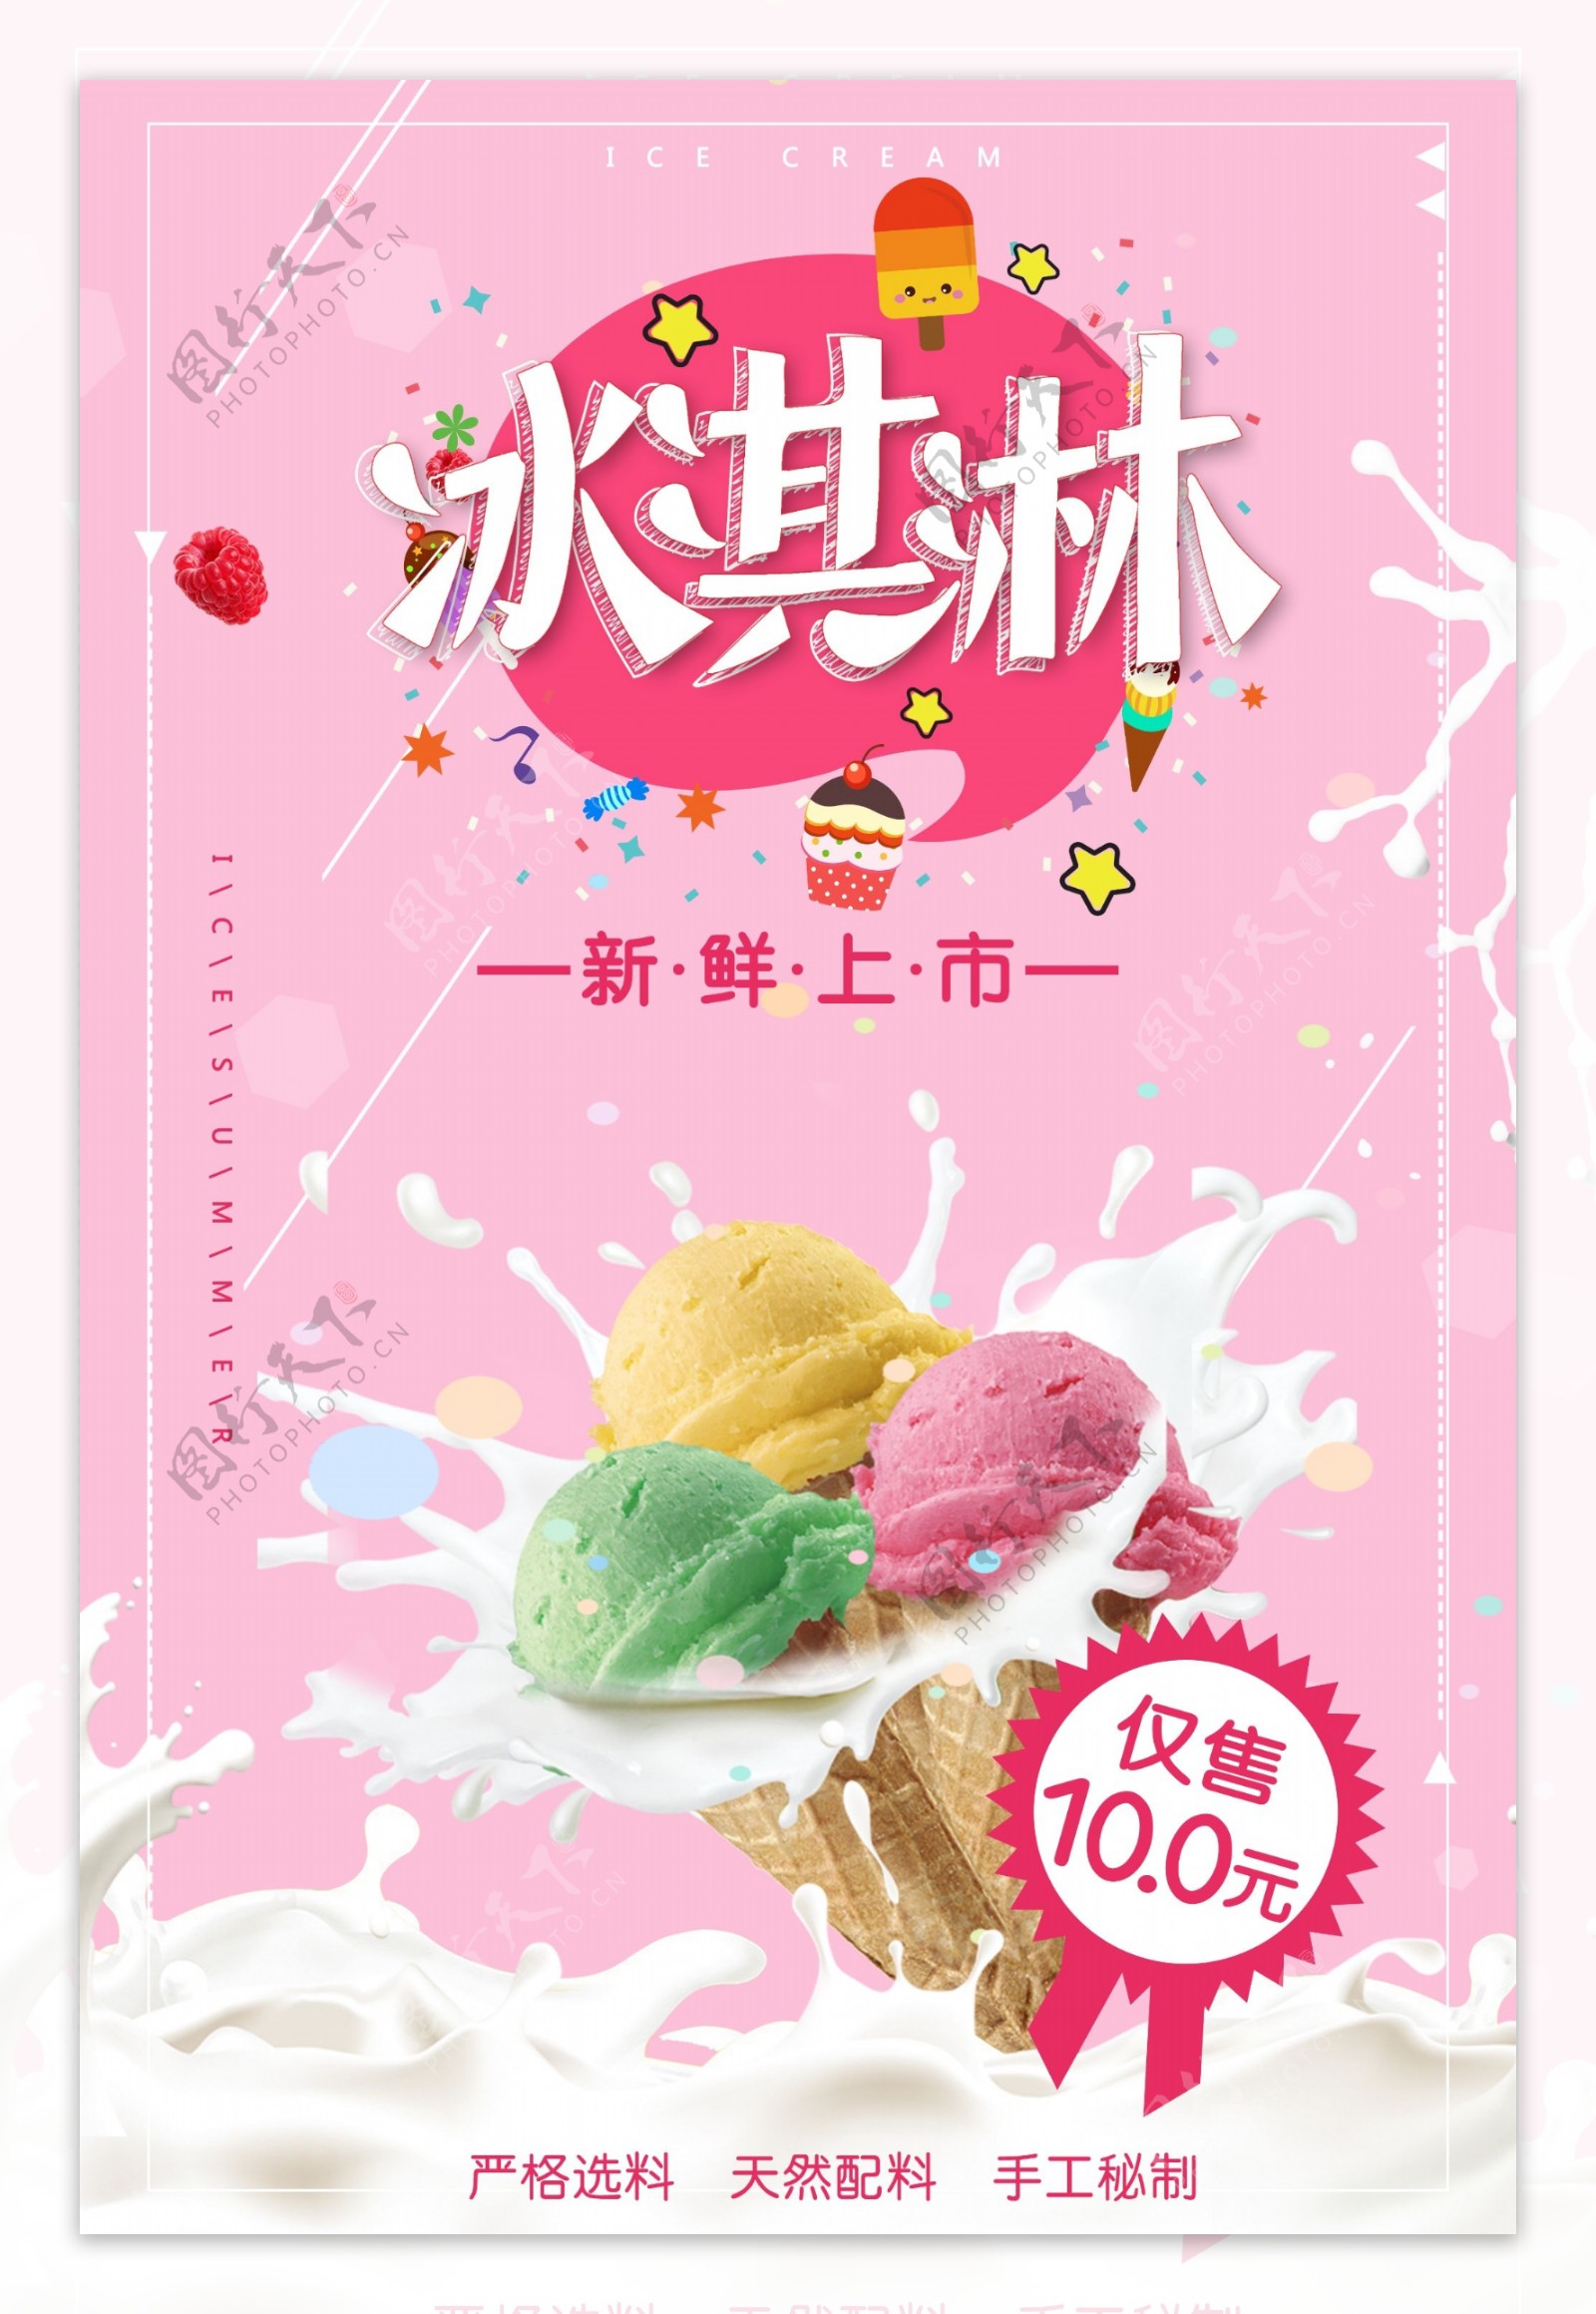 2018粉色清新风格冰淇淋海报